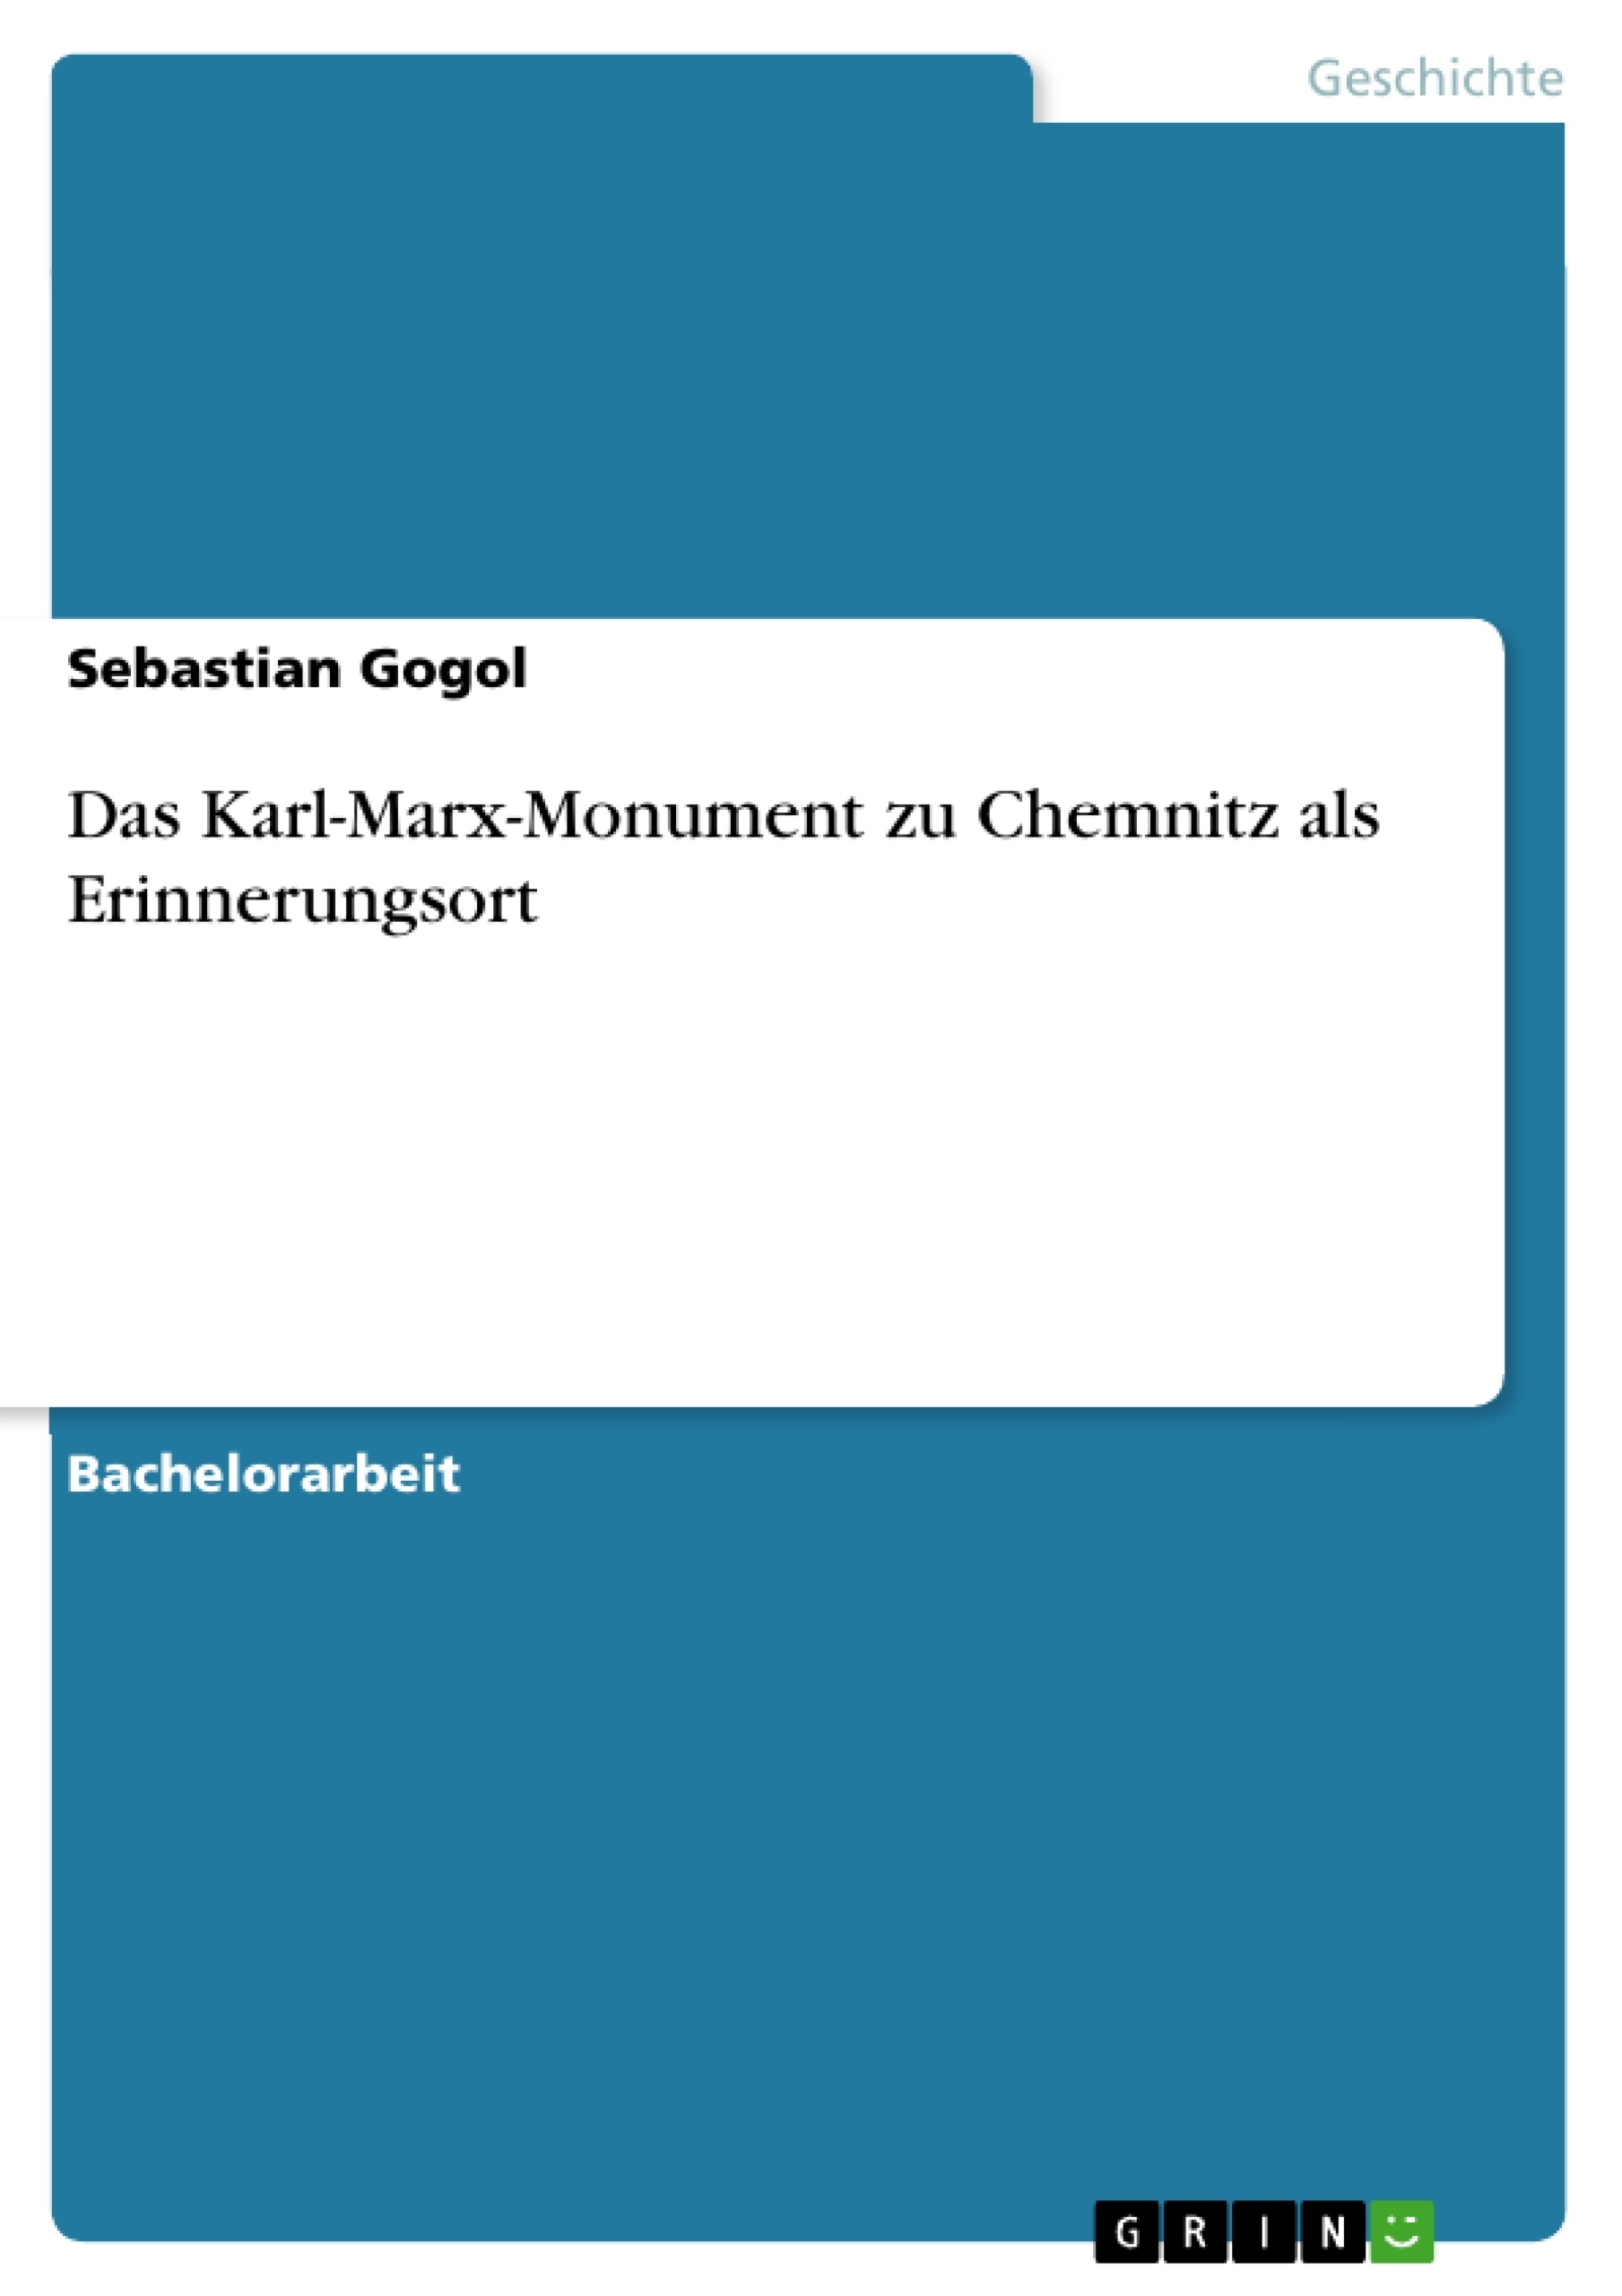 Título: Das Karl-Marx-Monument zu Chemnitz als Erinnerungsort